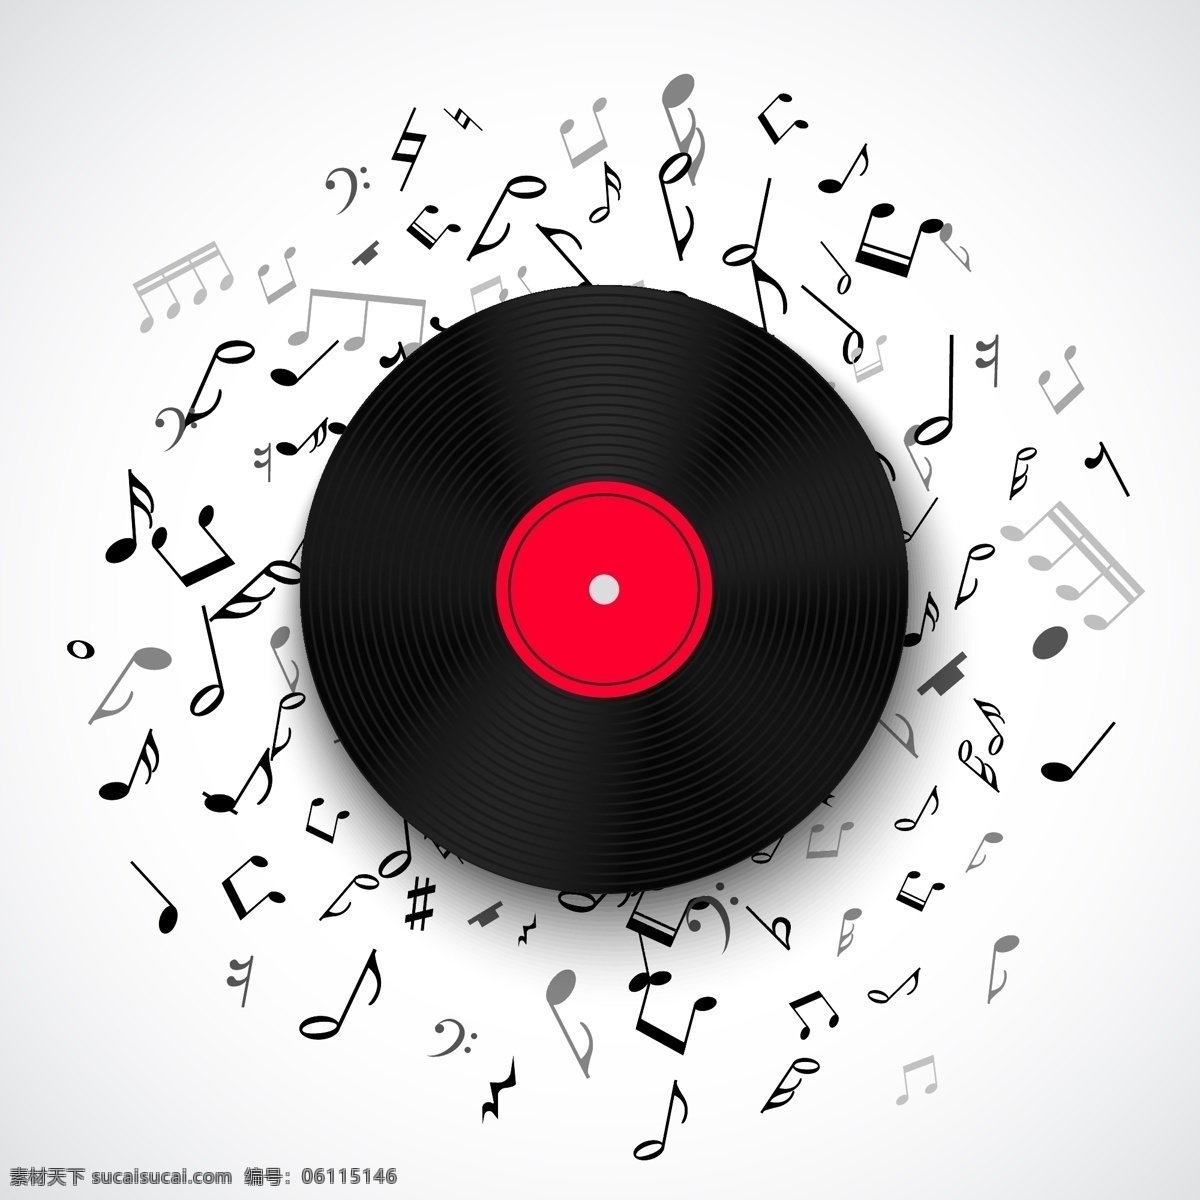 创意 红色 音乐节 海报 宣传 矢量 复古 唱片 音乐 符号 黑白 碟片 片 背景 黑胶 cd 封面 矢量图 矢量素材